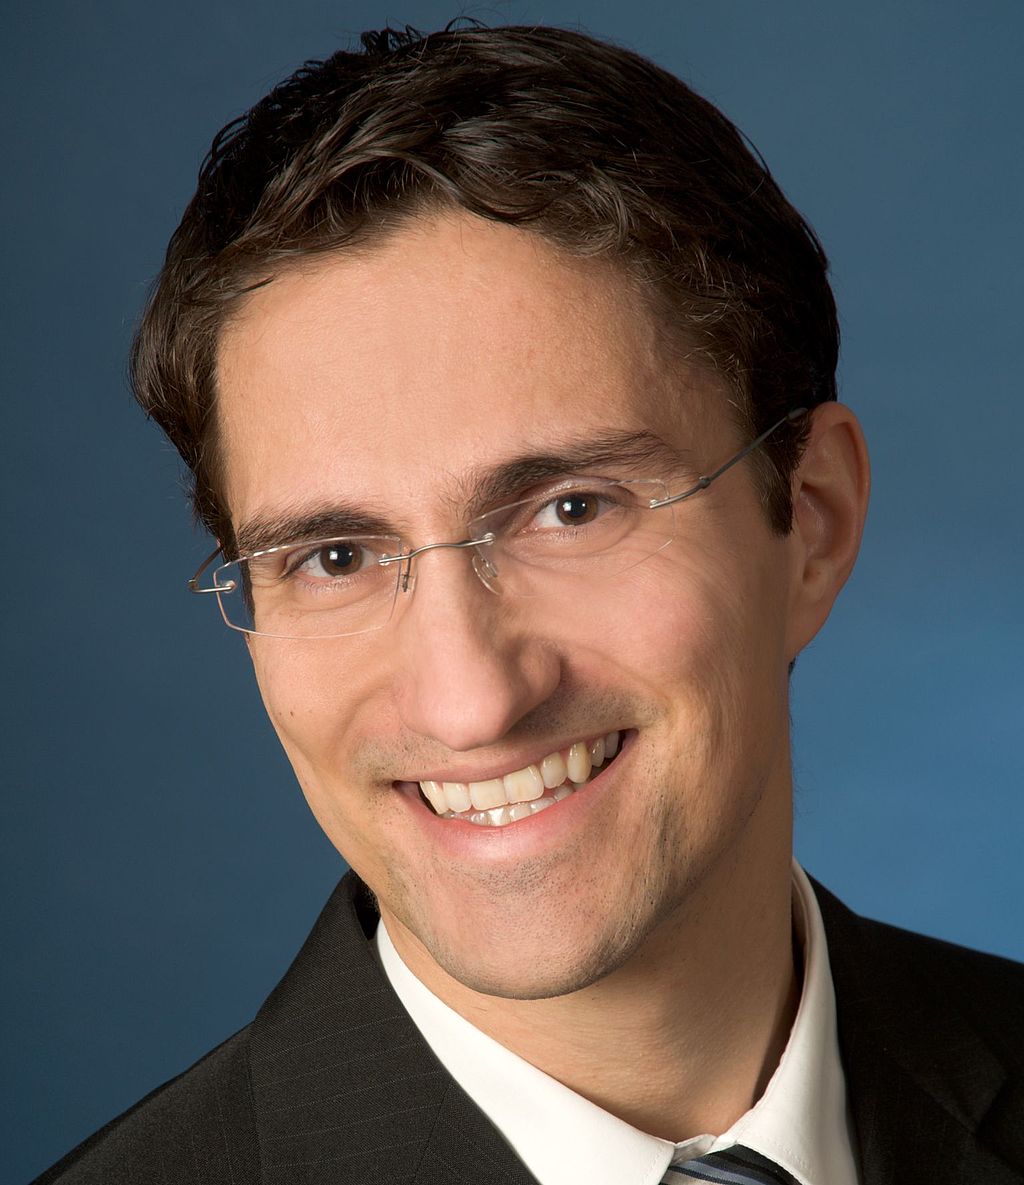 Professor Dr. Andre Guettler